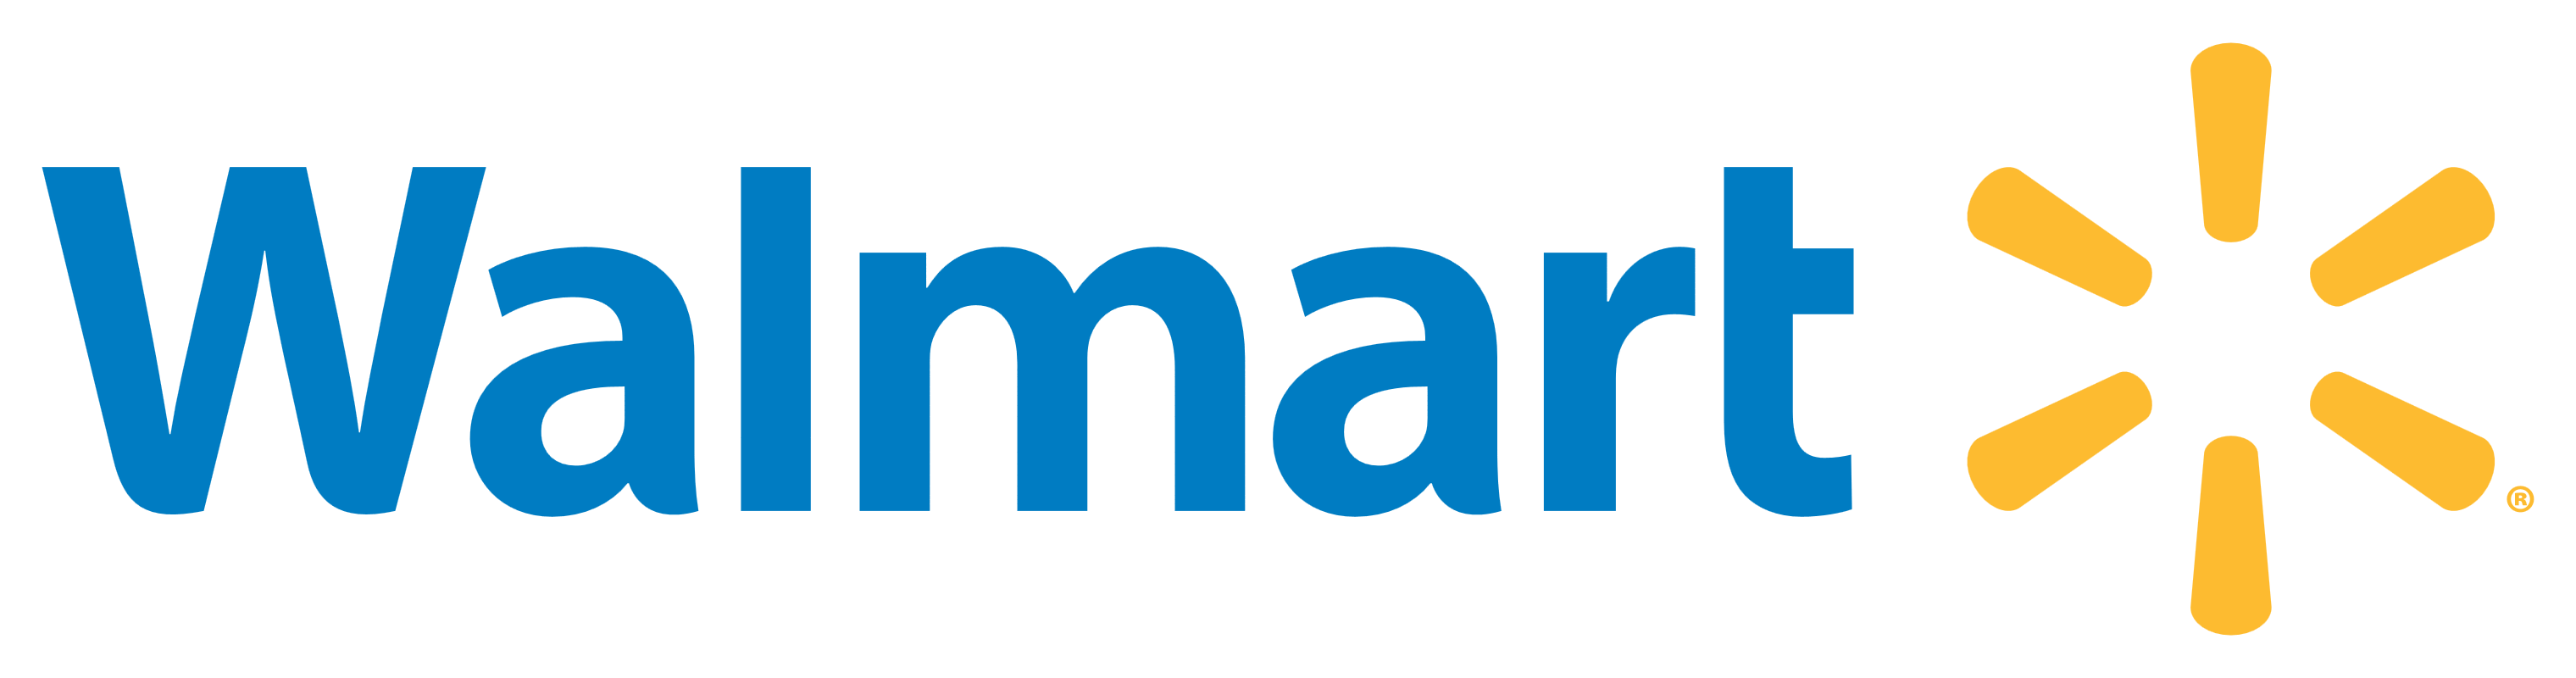 Walmart_logo_PNG1